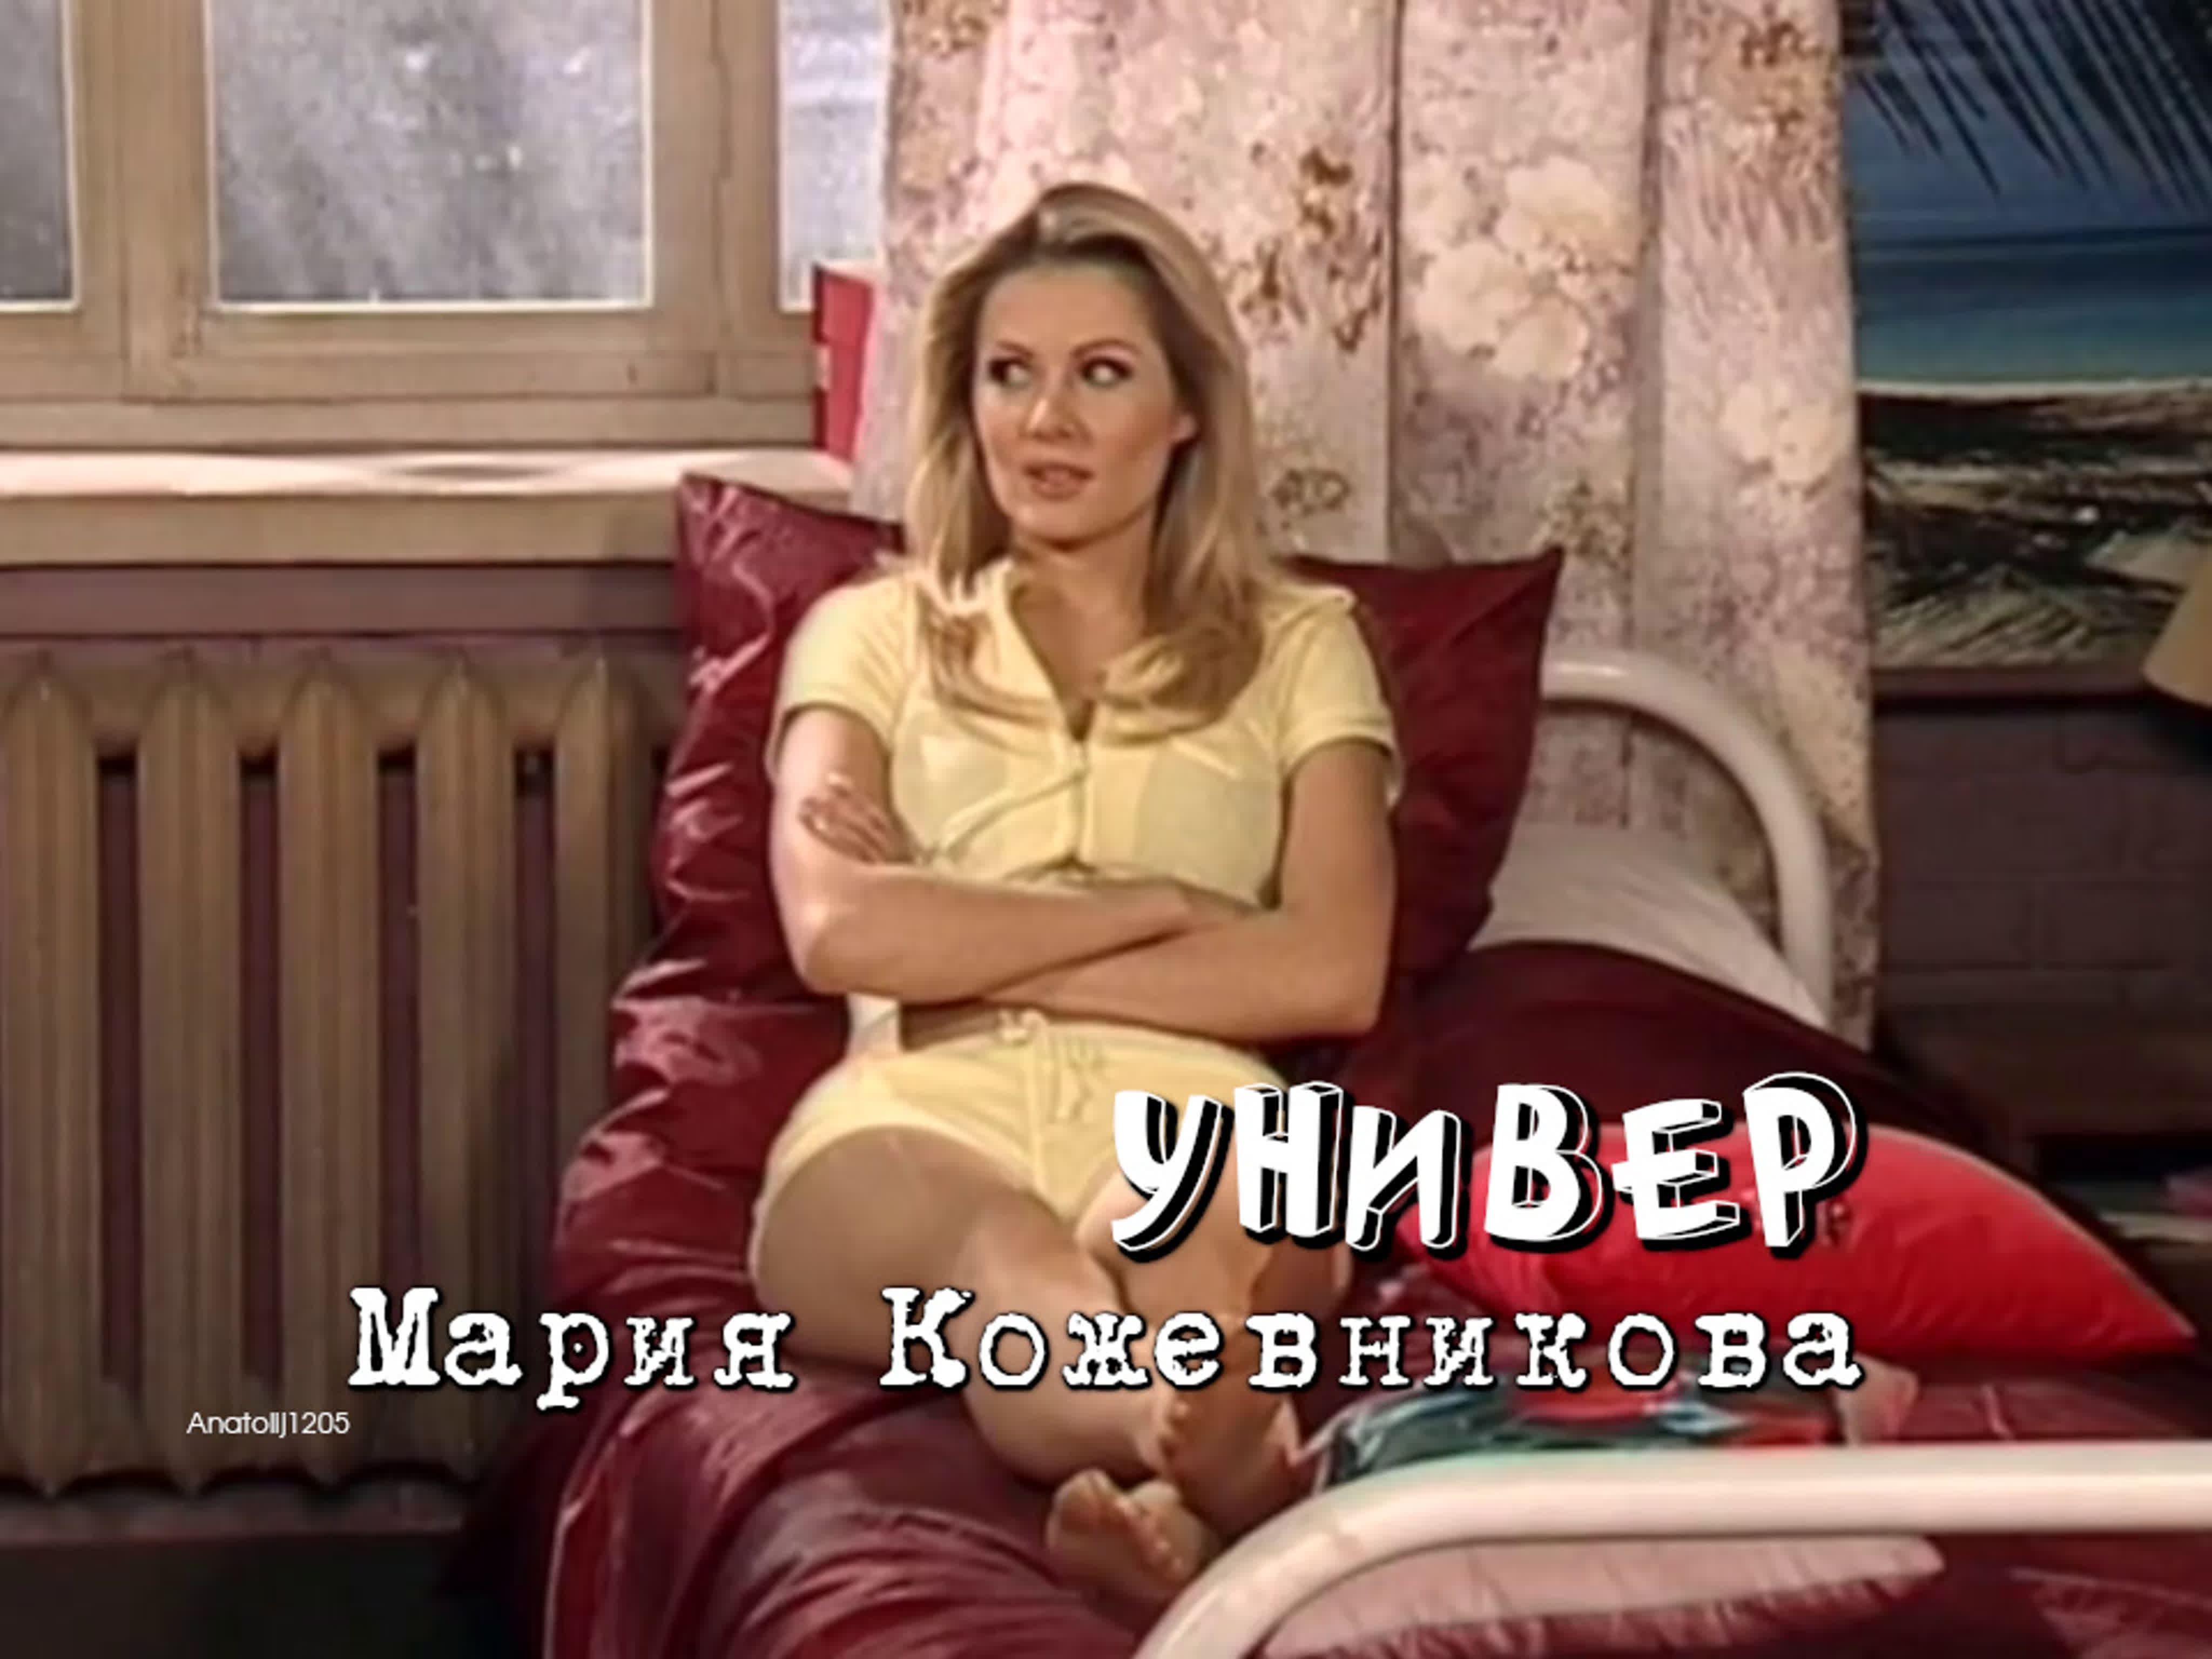 Мария кожевникова (универ, 2009) watch online